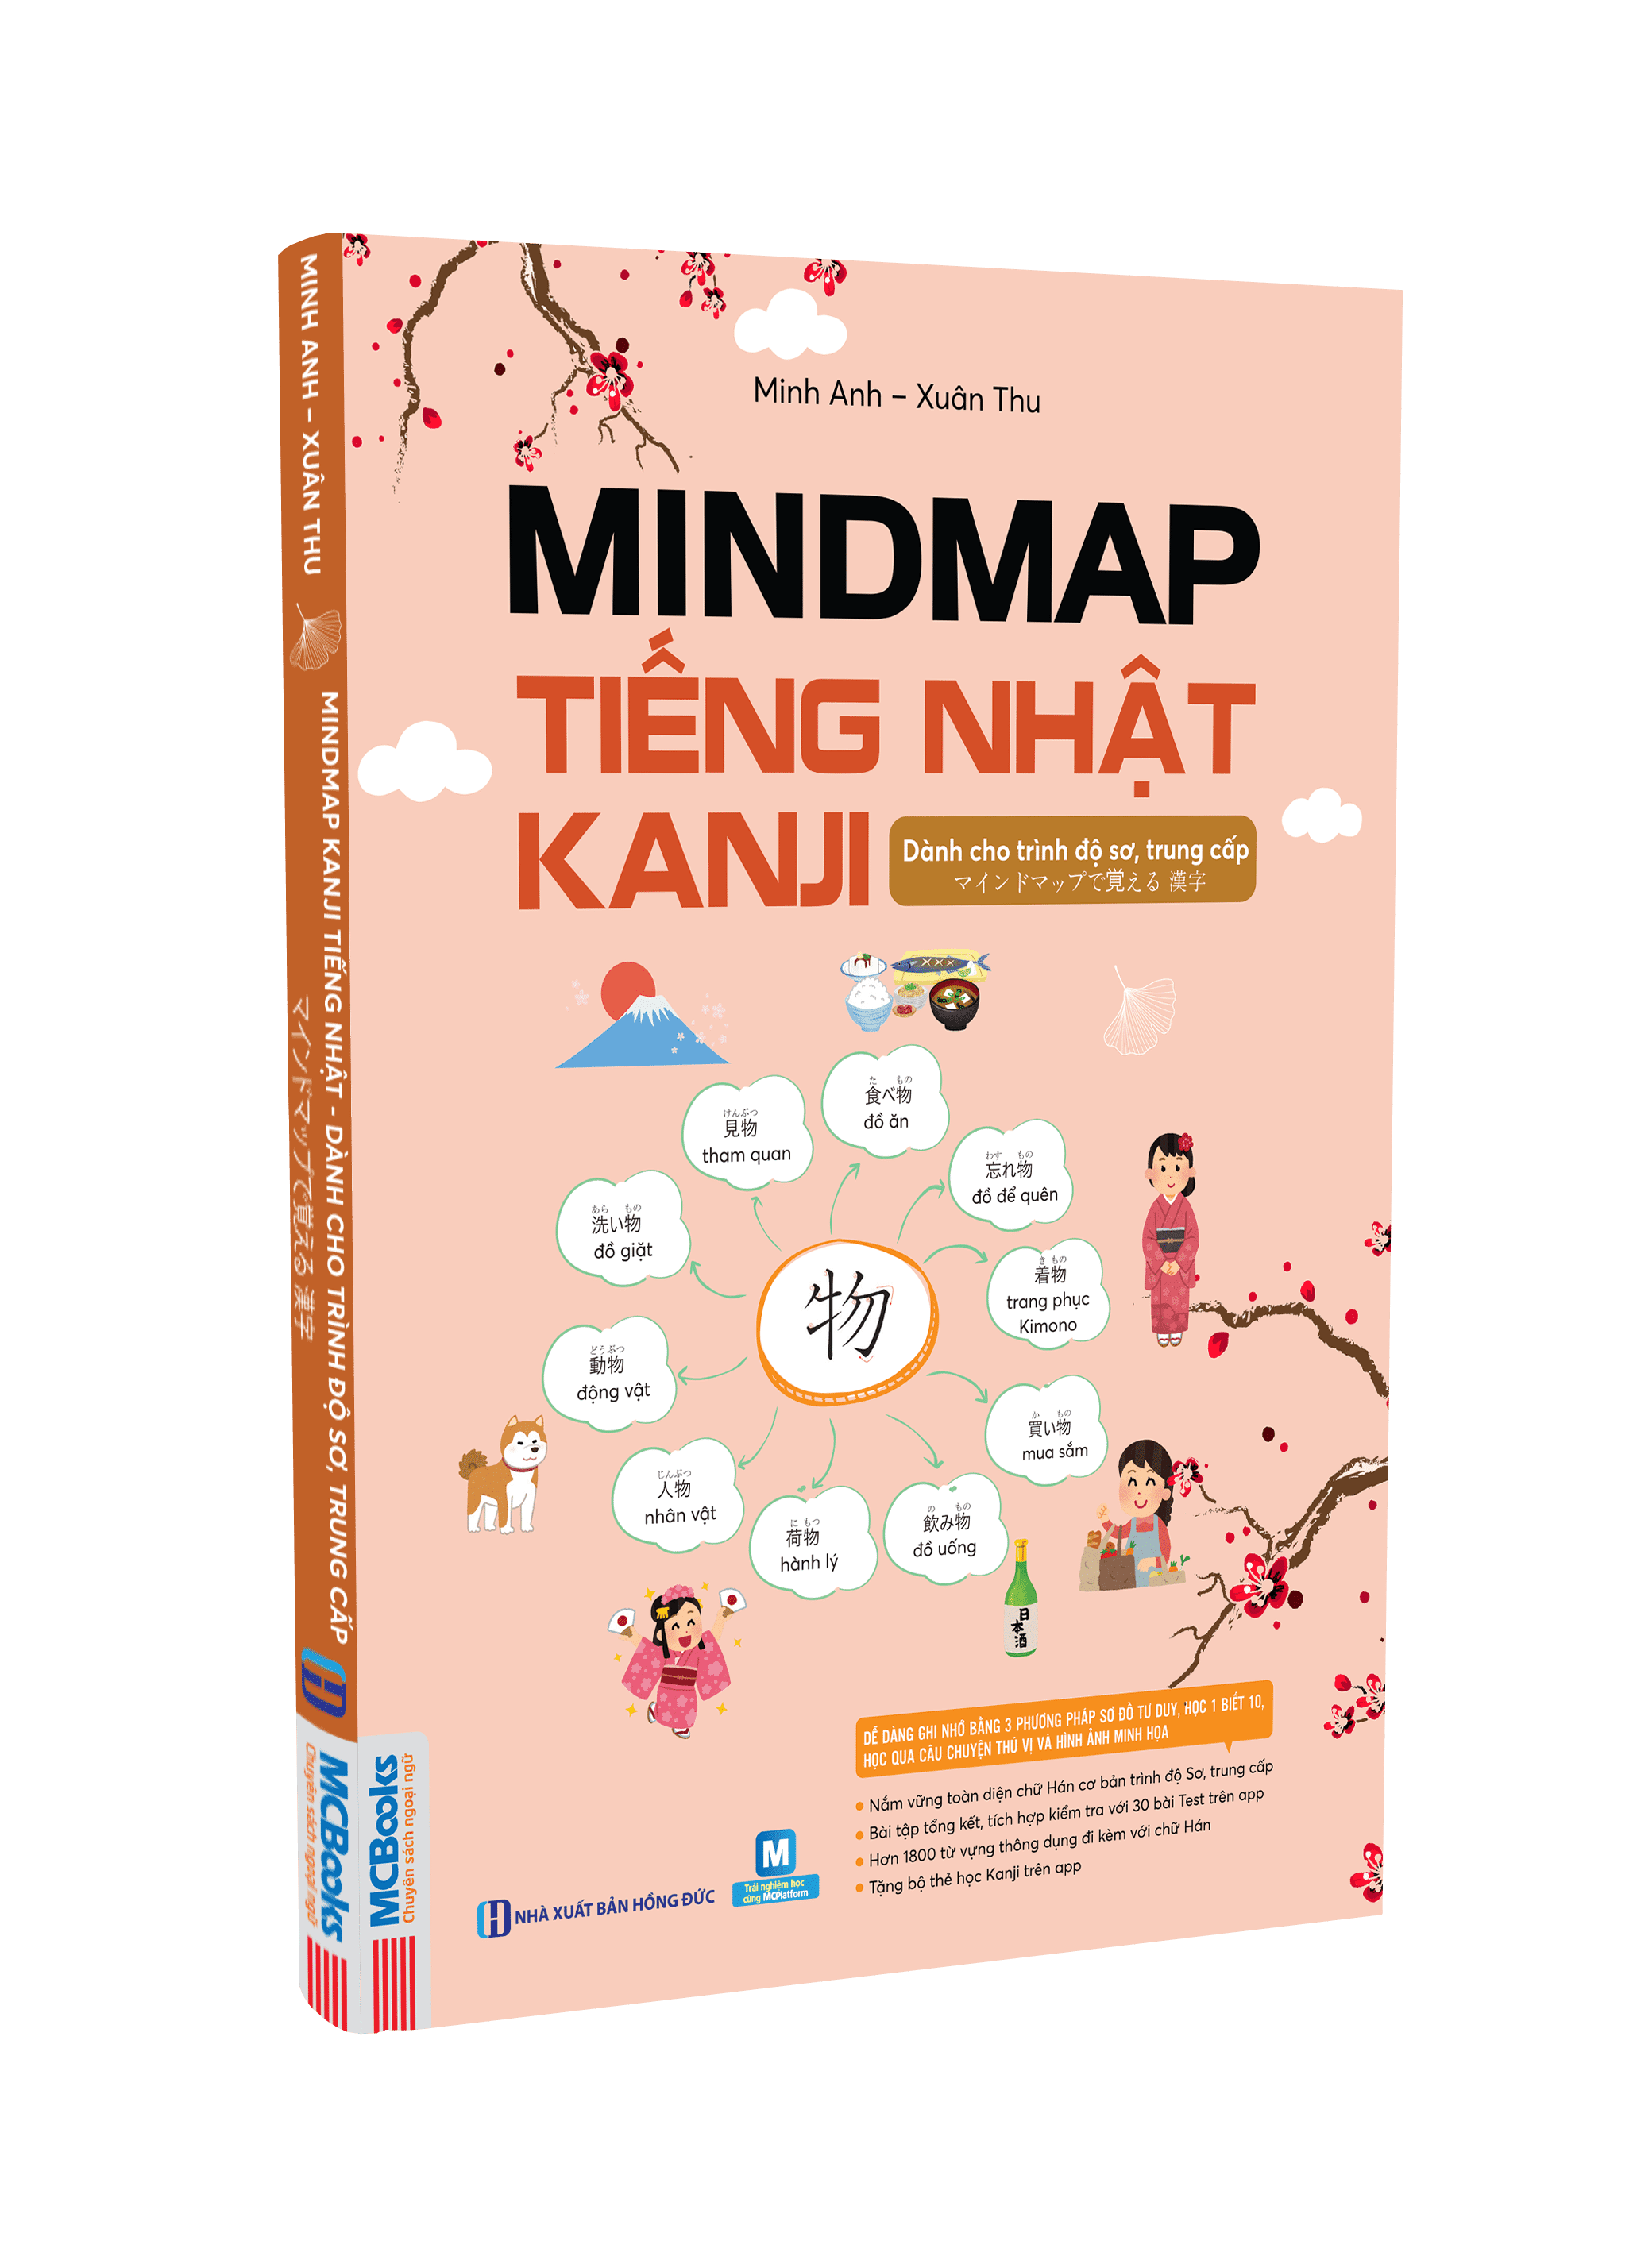 Mindmap Kanji tiếng Nhật – Dành cho trình độ sơ, trung cấp - Học kèm app